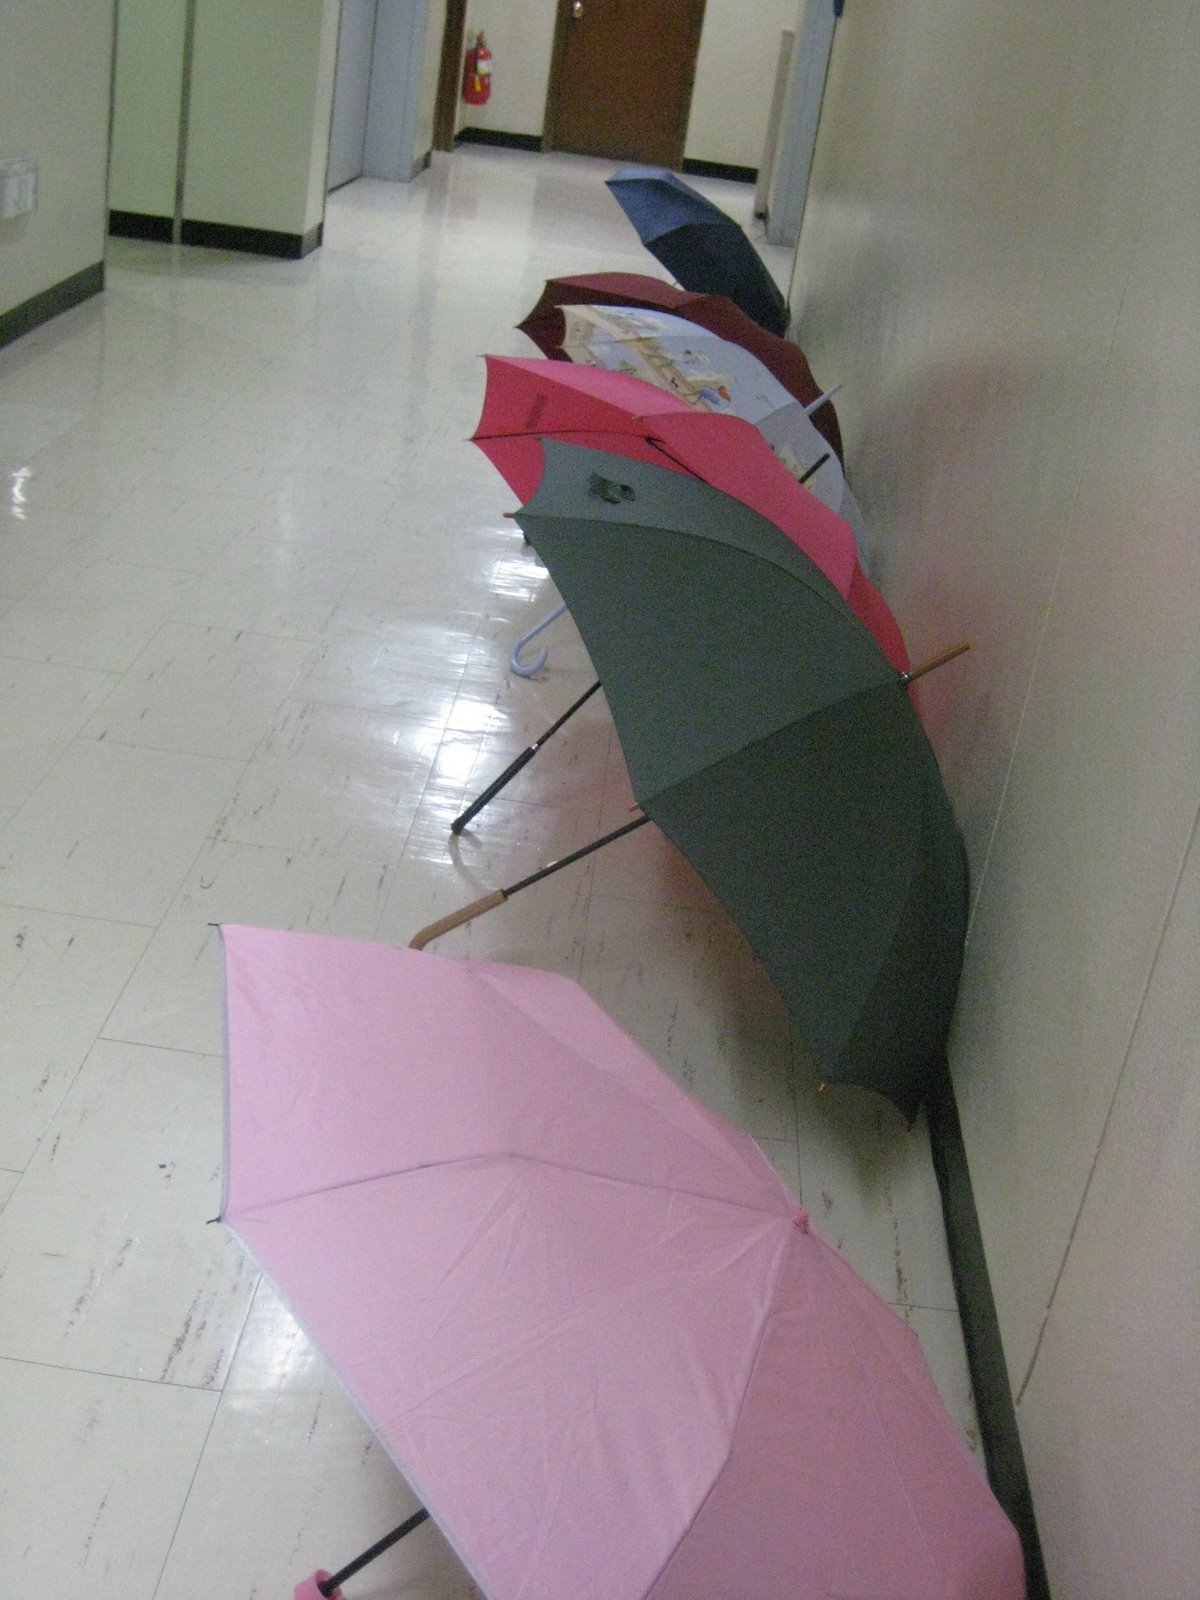 [Umbrellas.JPG]